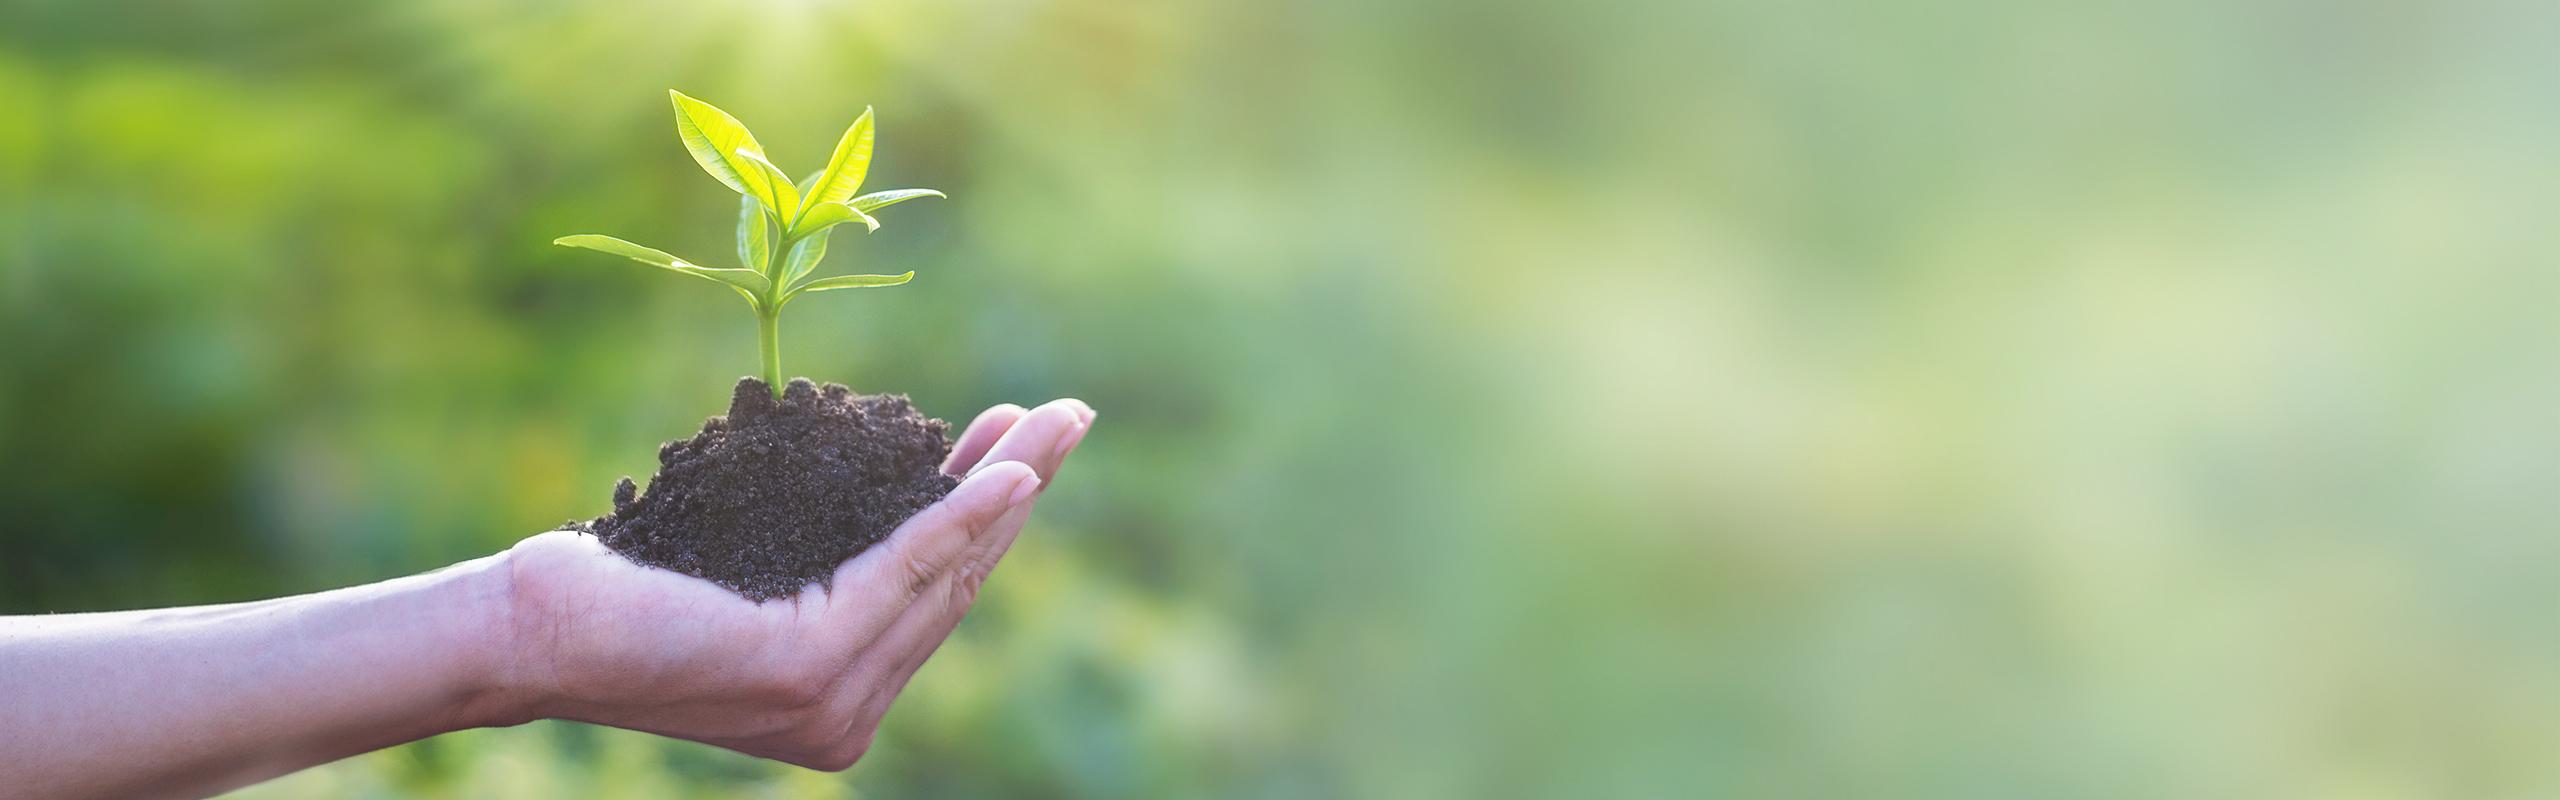 BRITA ekorozwój ręka trzyma roślinę z ziemią